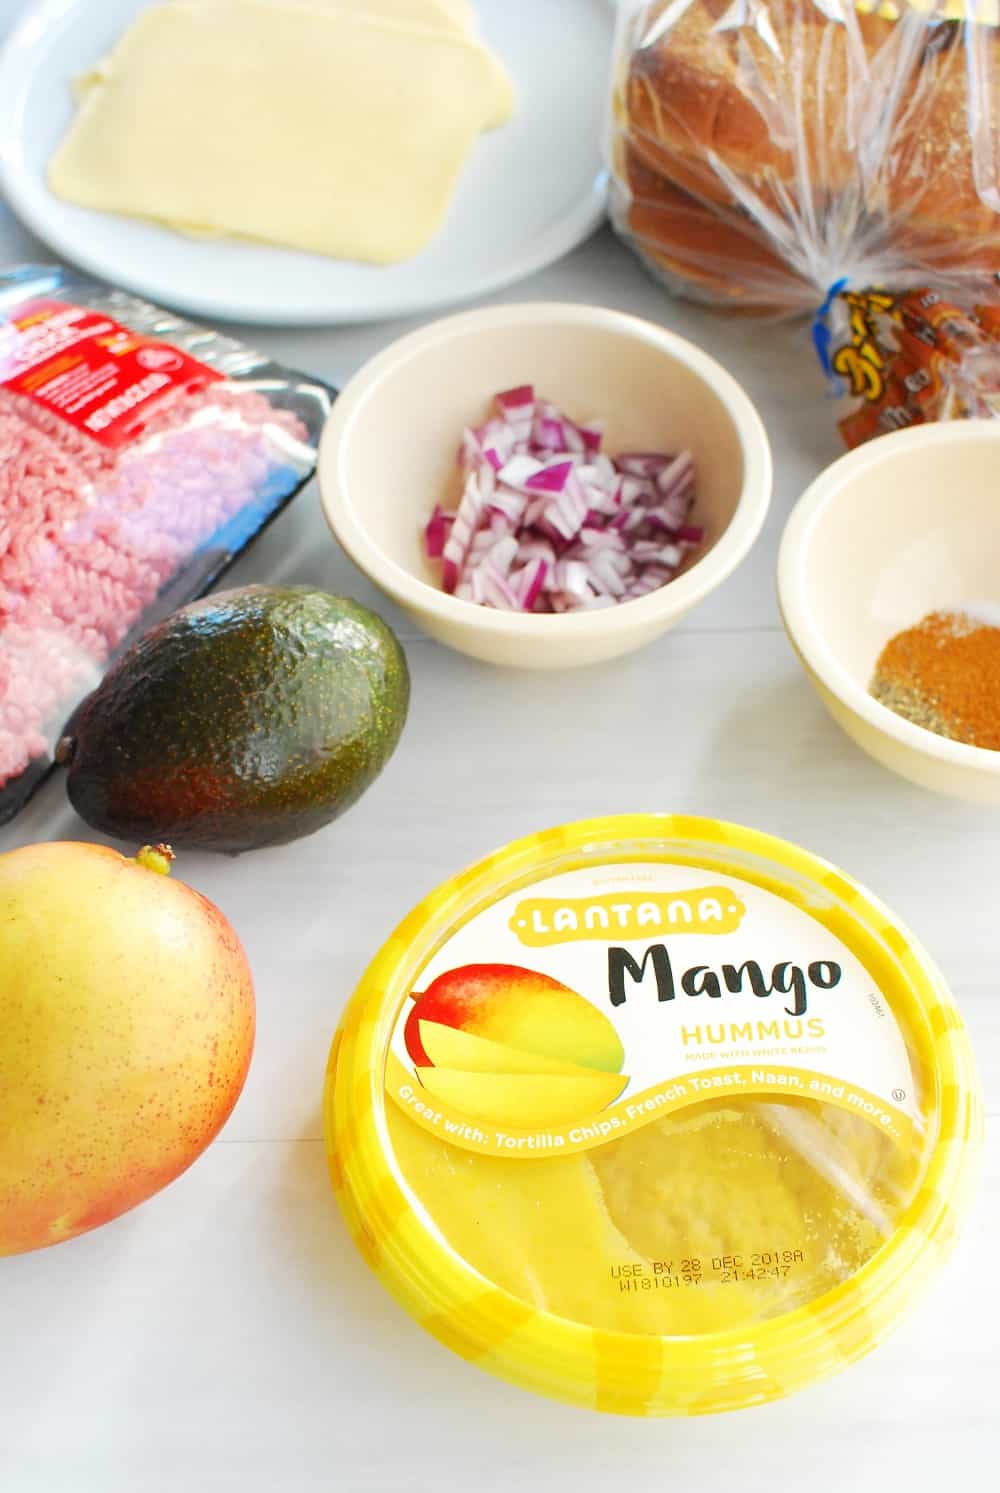 Ingredients to make avocado mango burgers